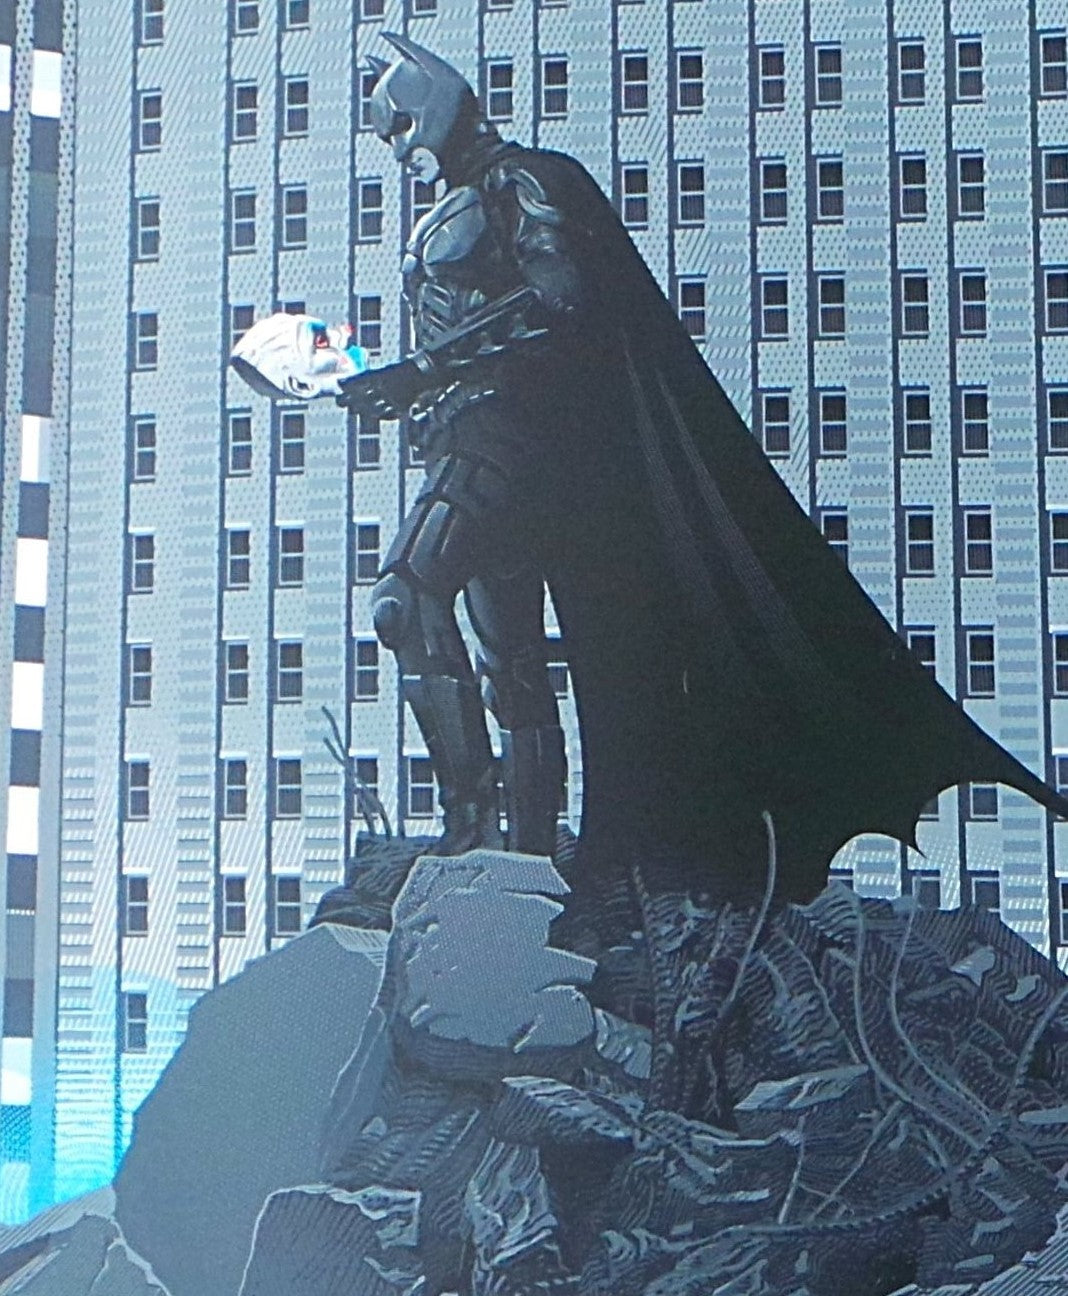 Laurent Durieux - The Dark Knight (Variant) Screen print - xx/225 N'd Mondo Batman